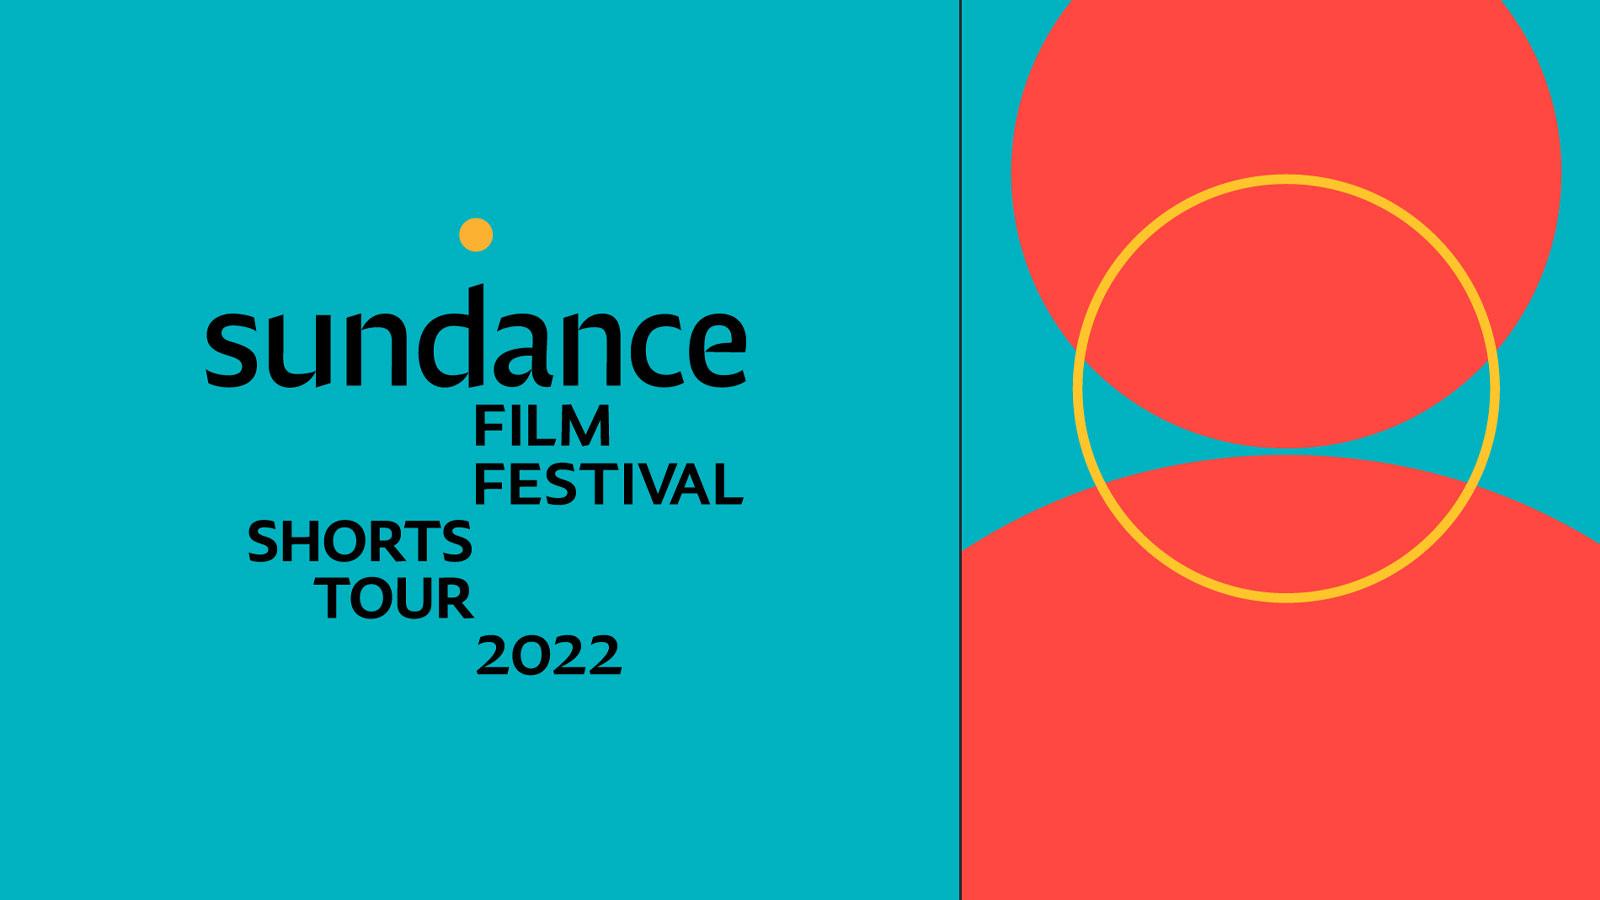 Scene from the film Sundance Film Festival Shorts Tour 2022